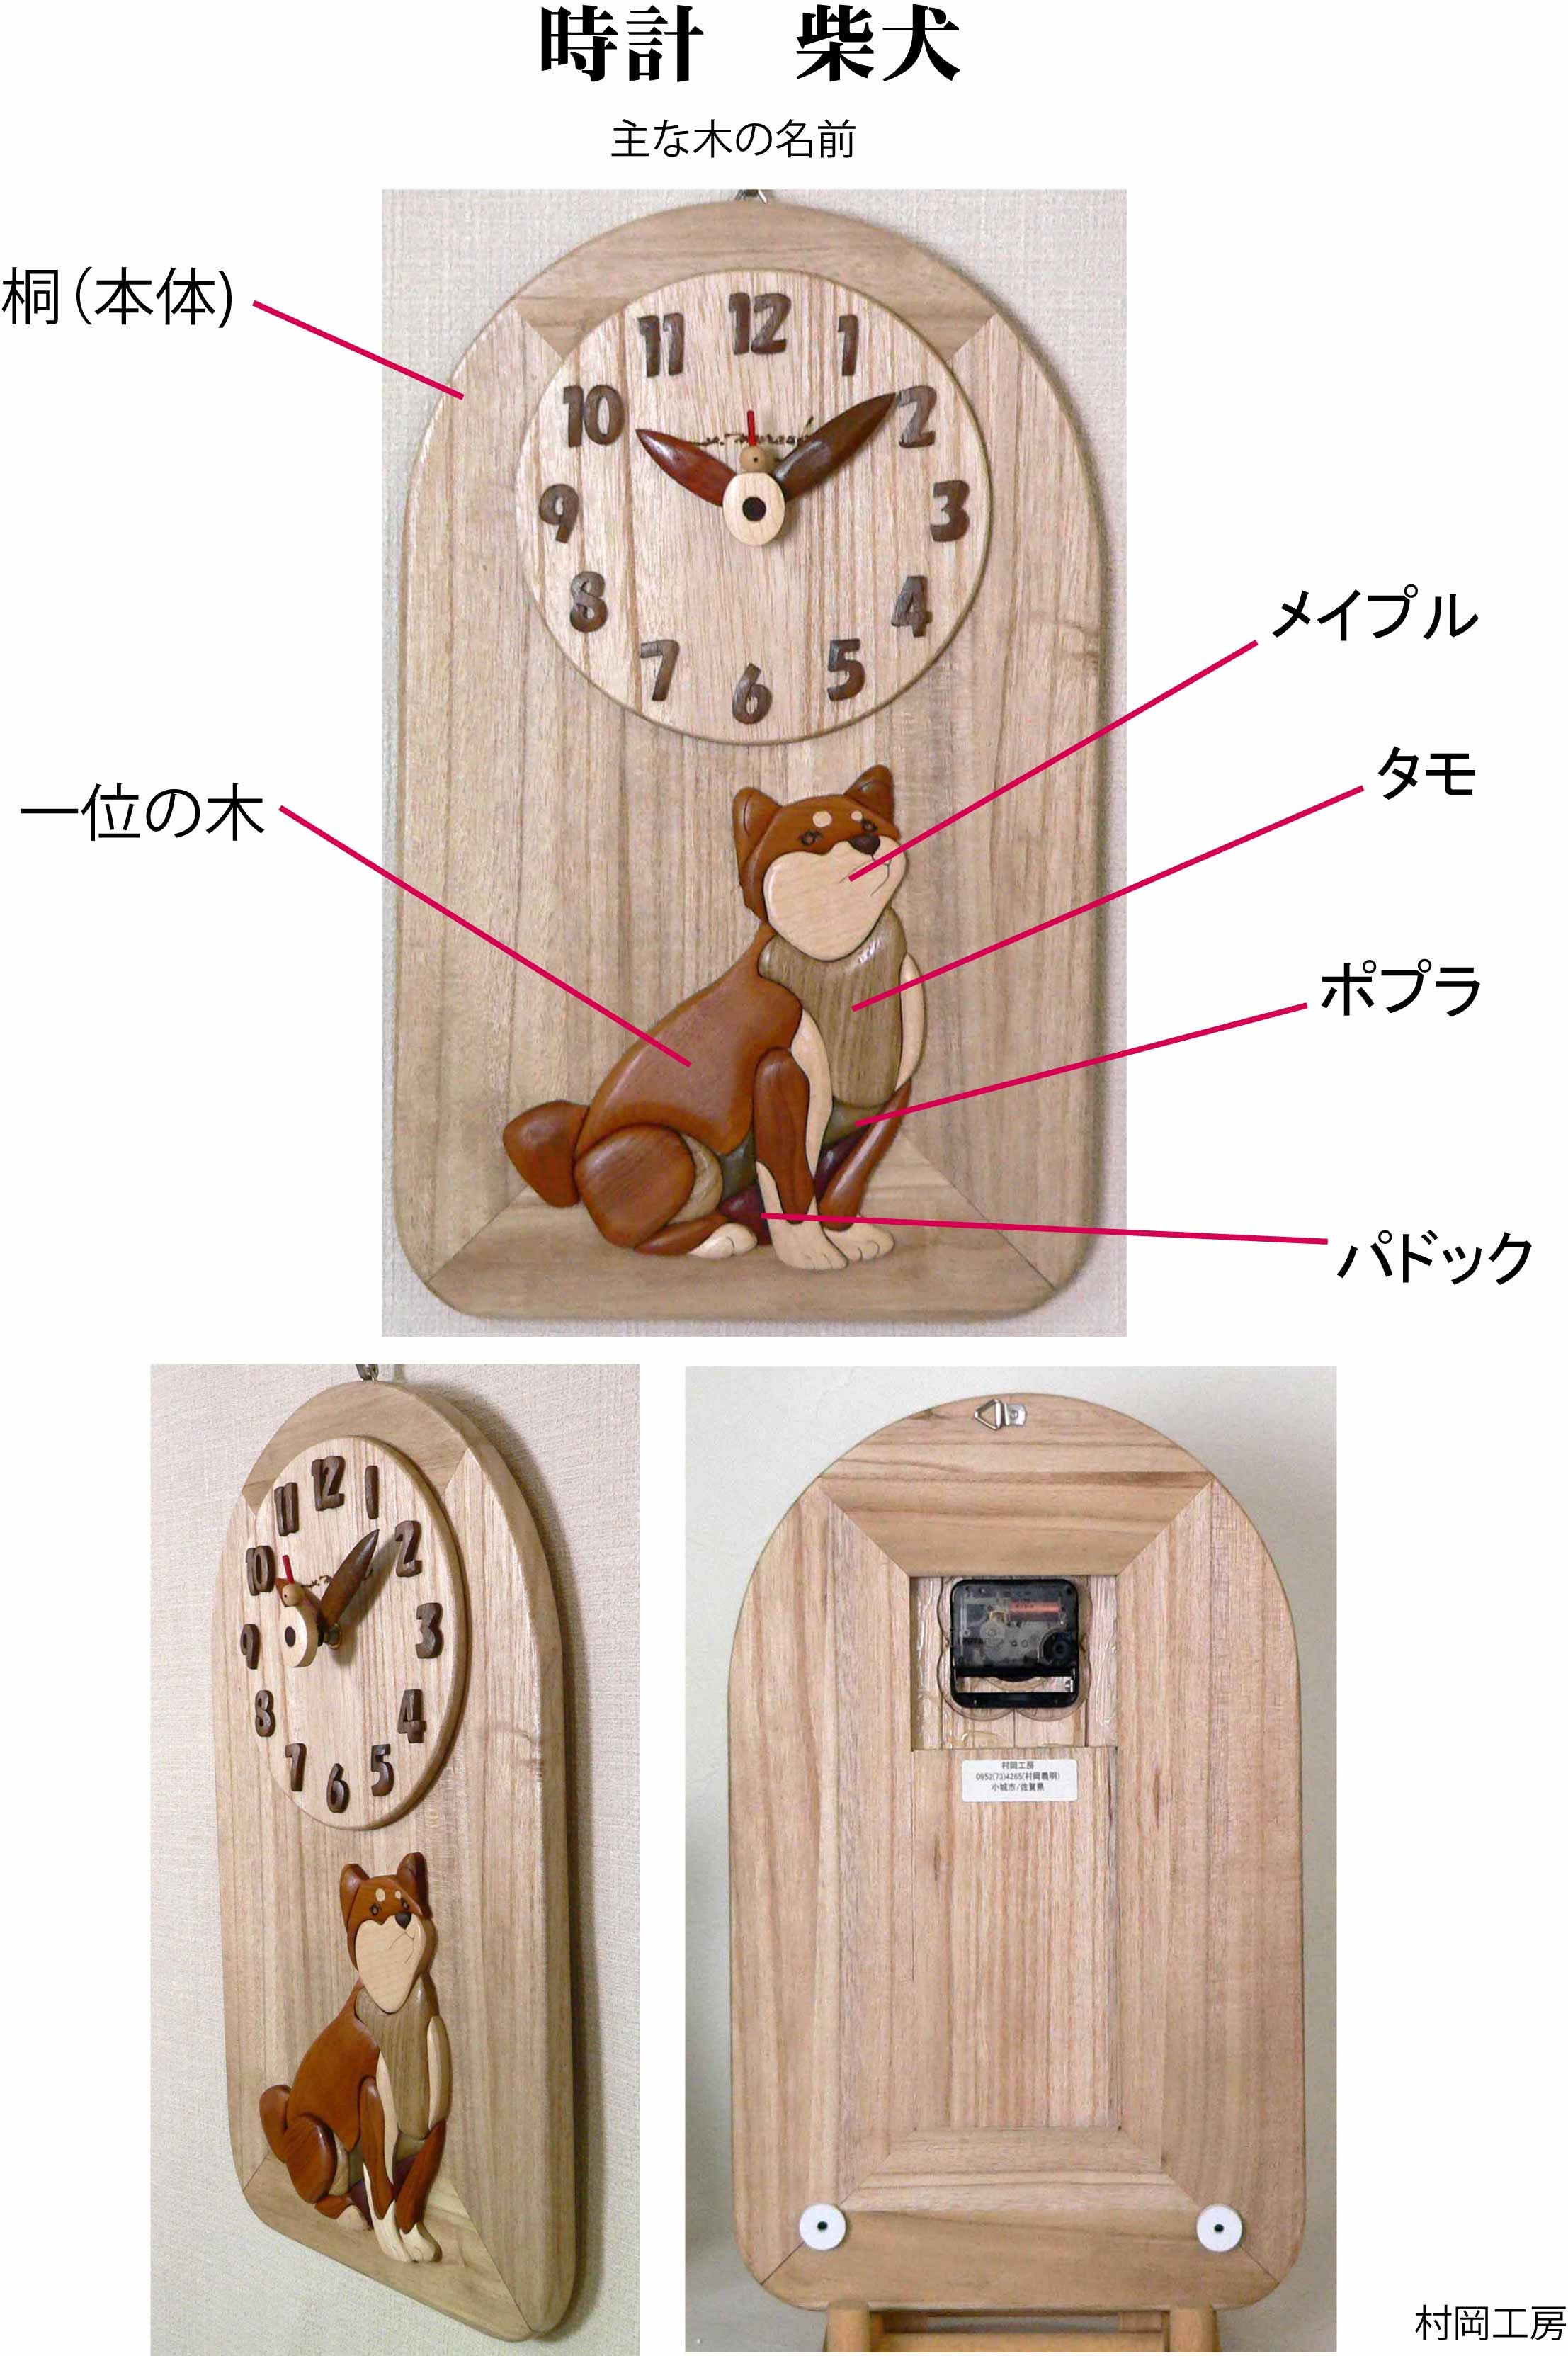 時計 柴犬 Iichi ハンドメイド クラフト作品 手仕事品の通販